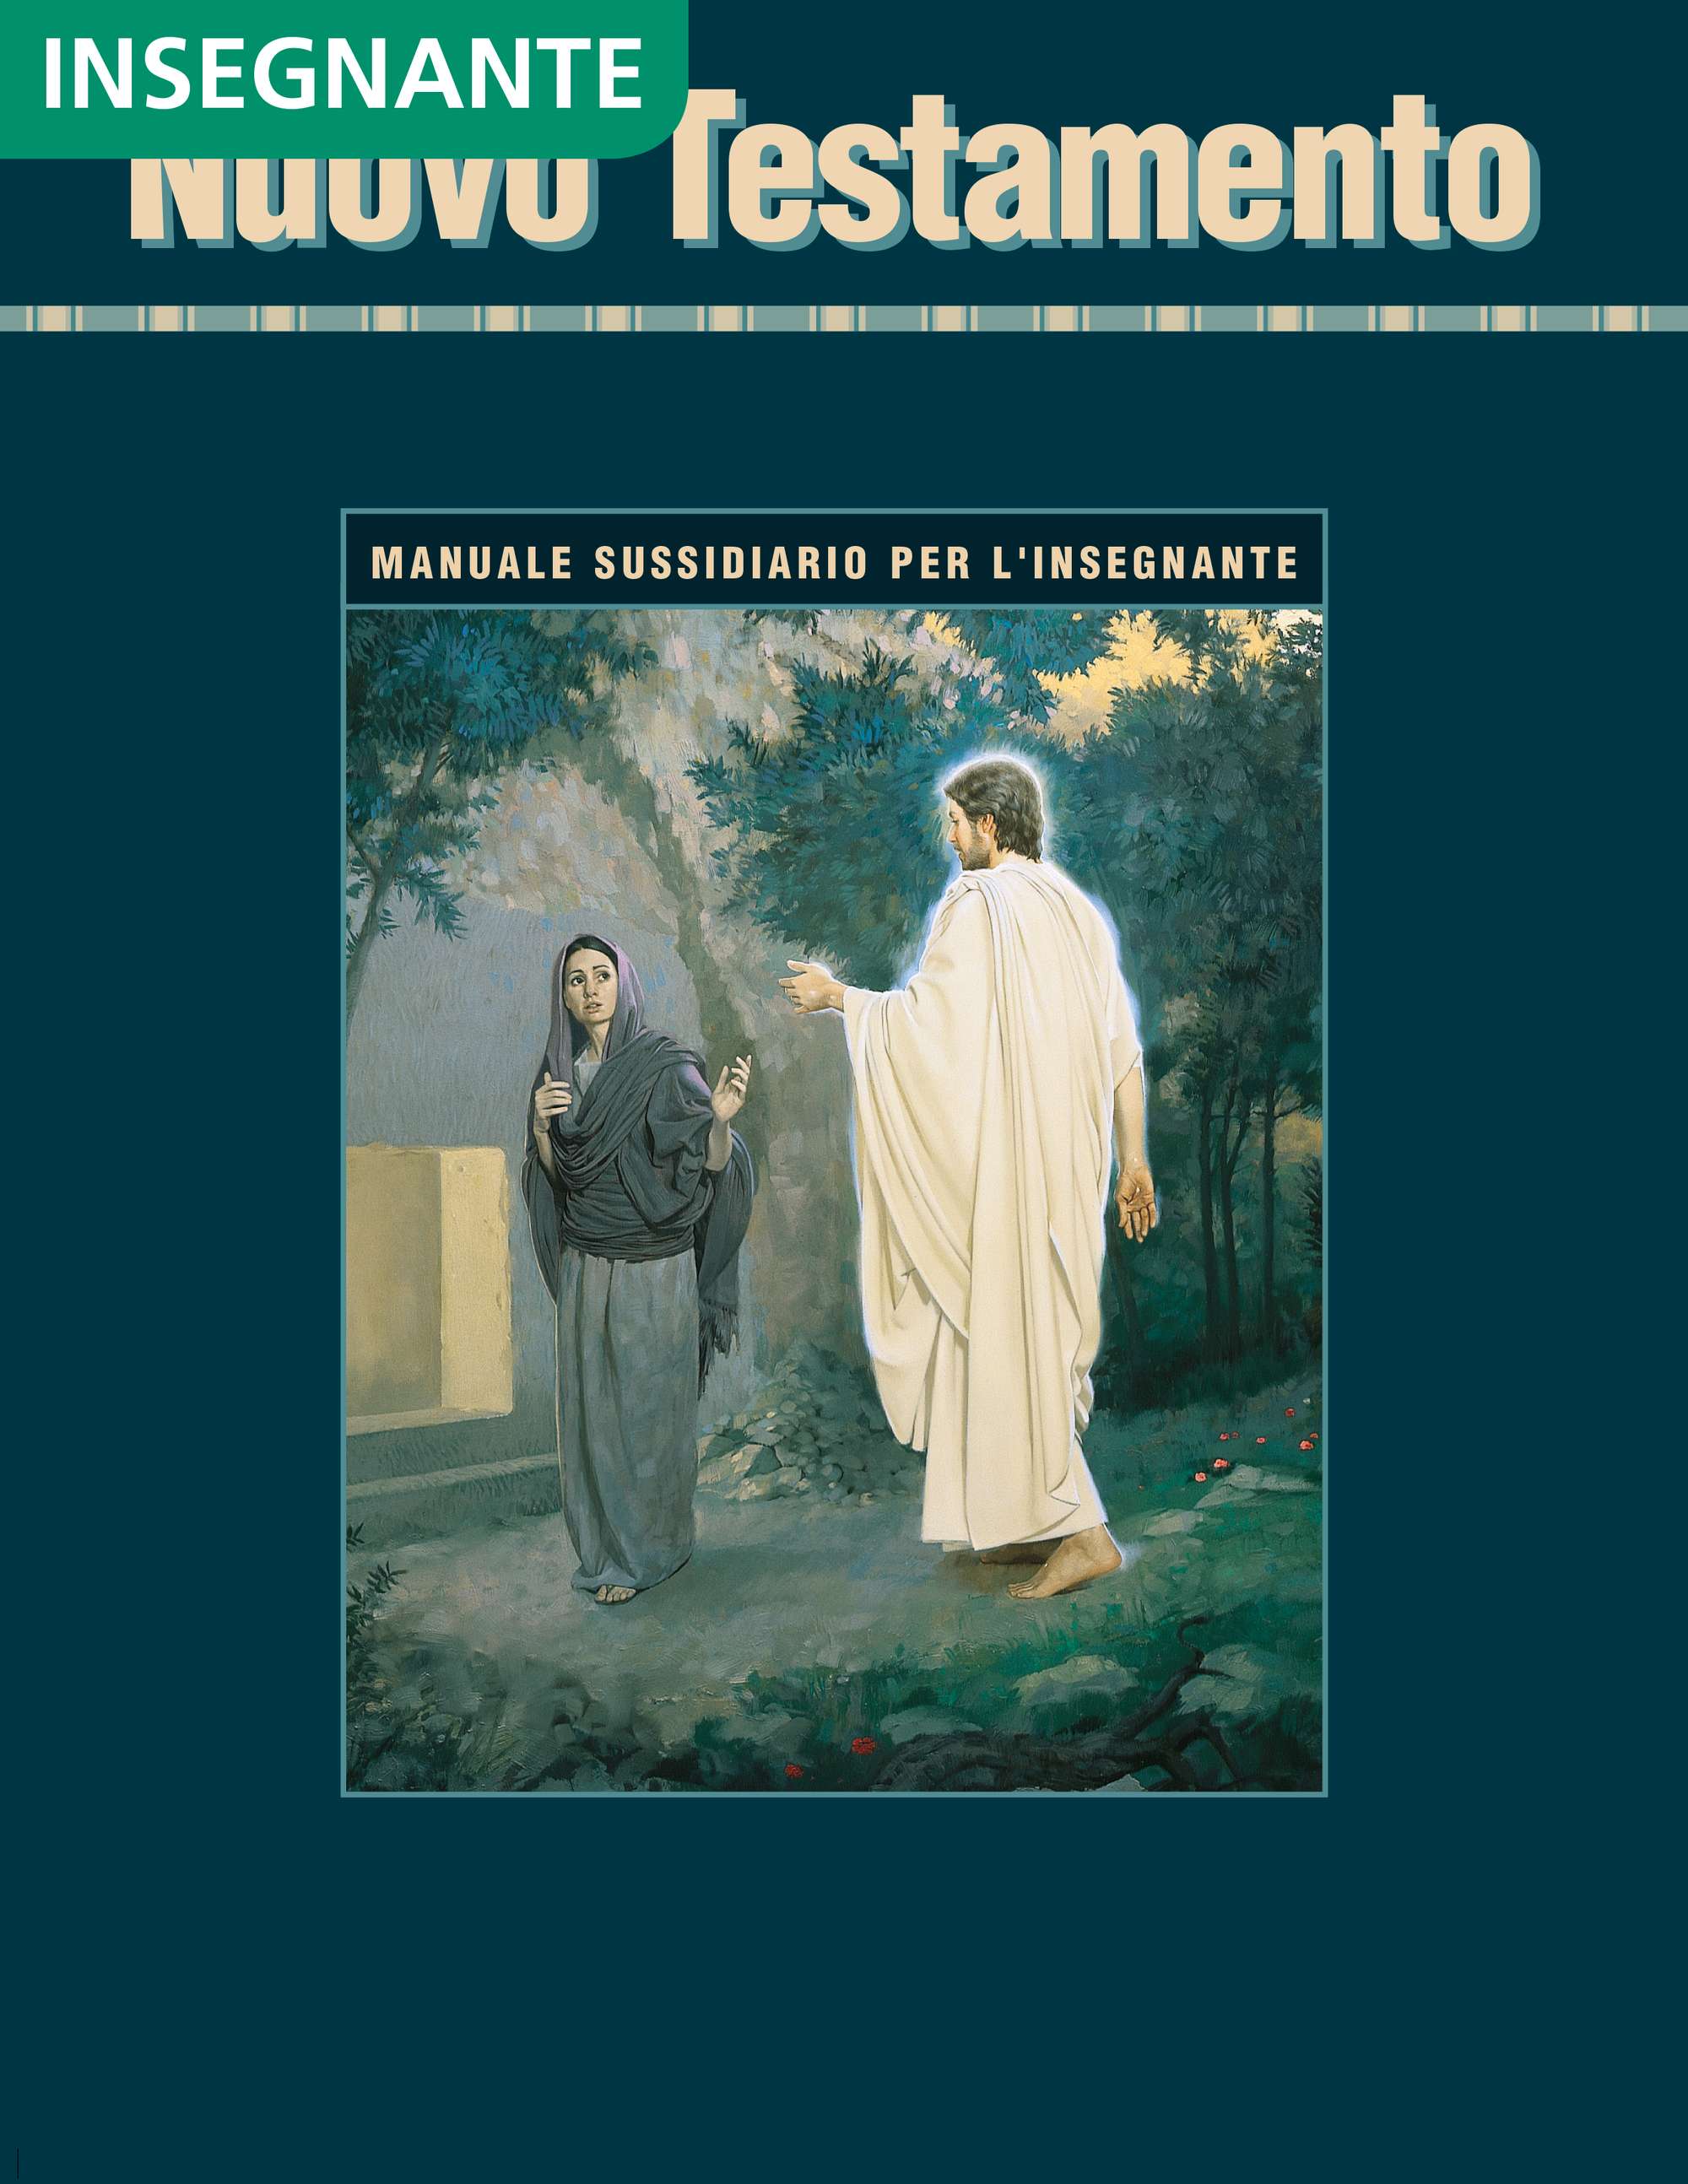 Nuovo Testamento – Manuale sussidiario per l’insegnante di Seminario